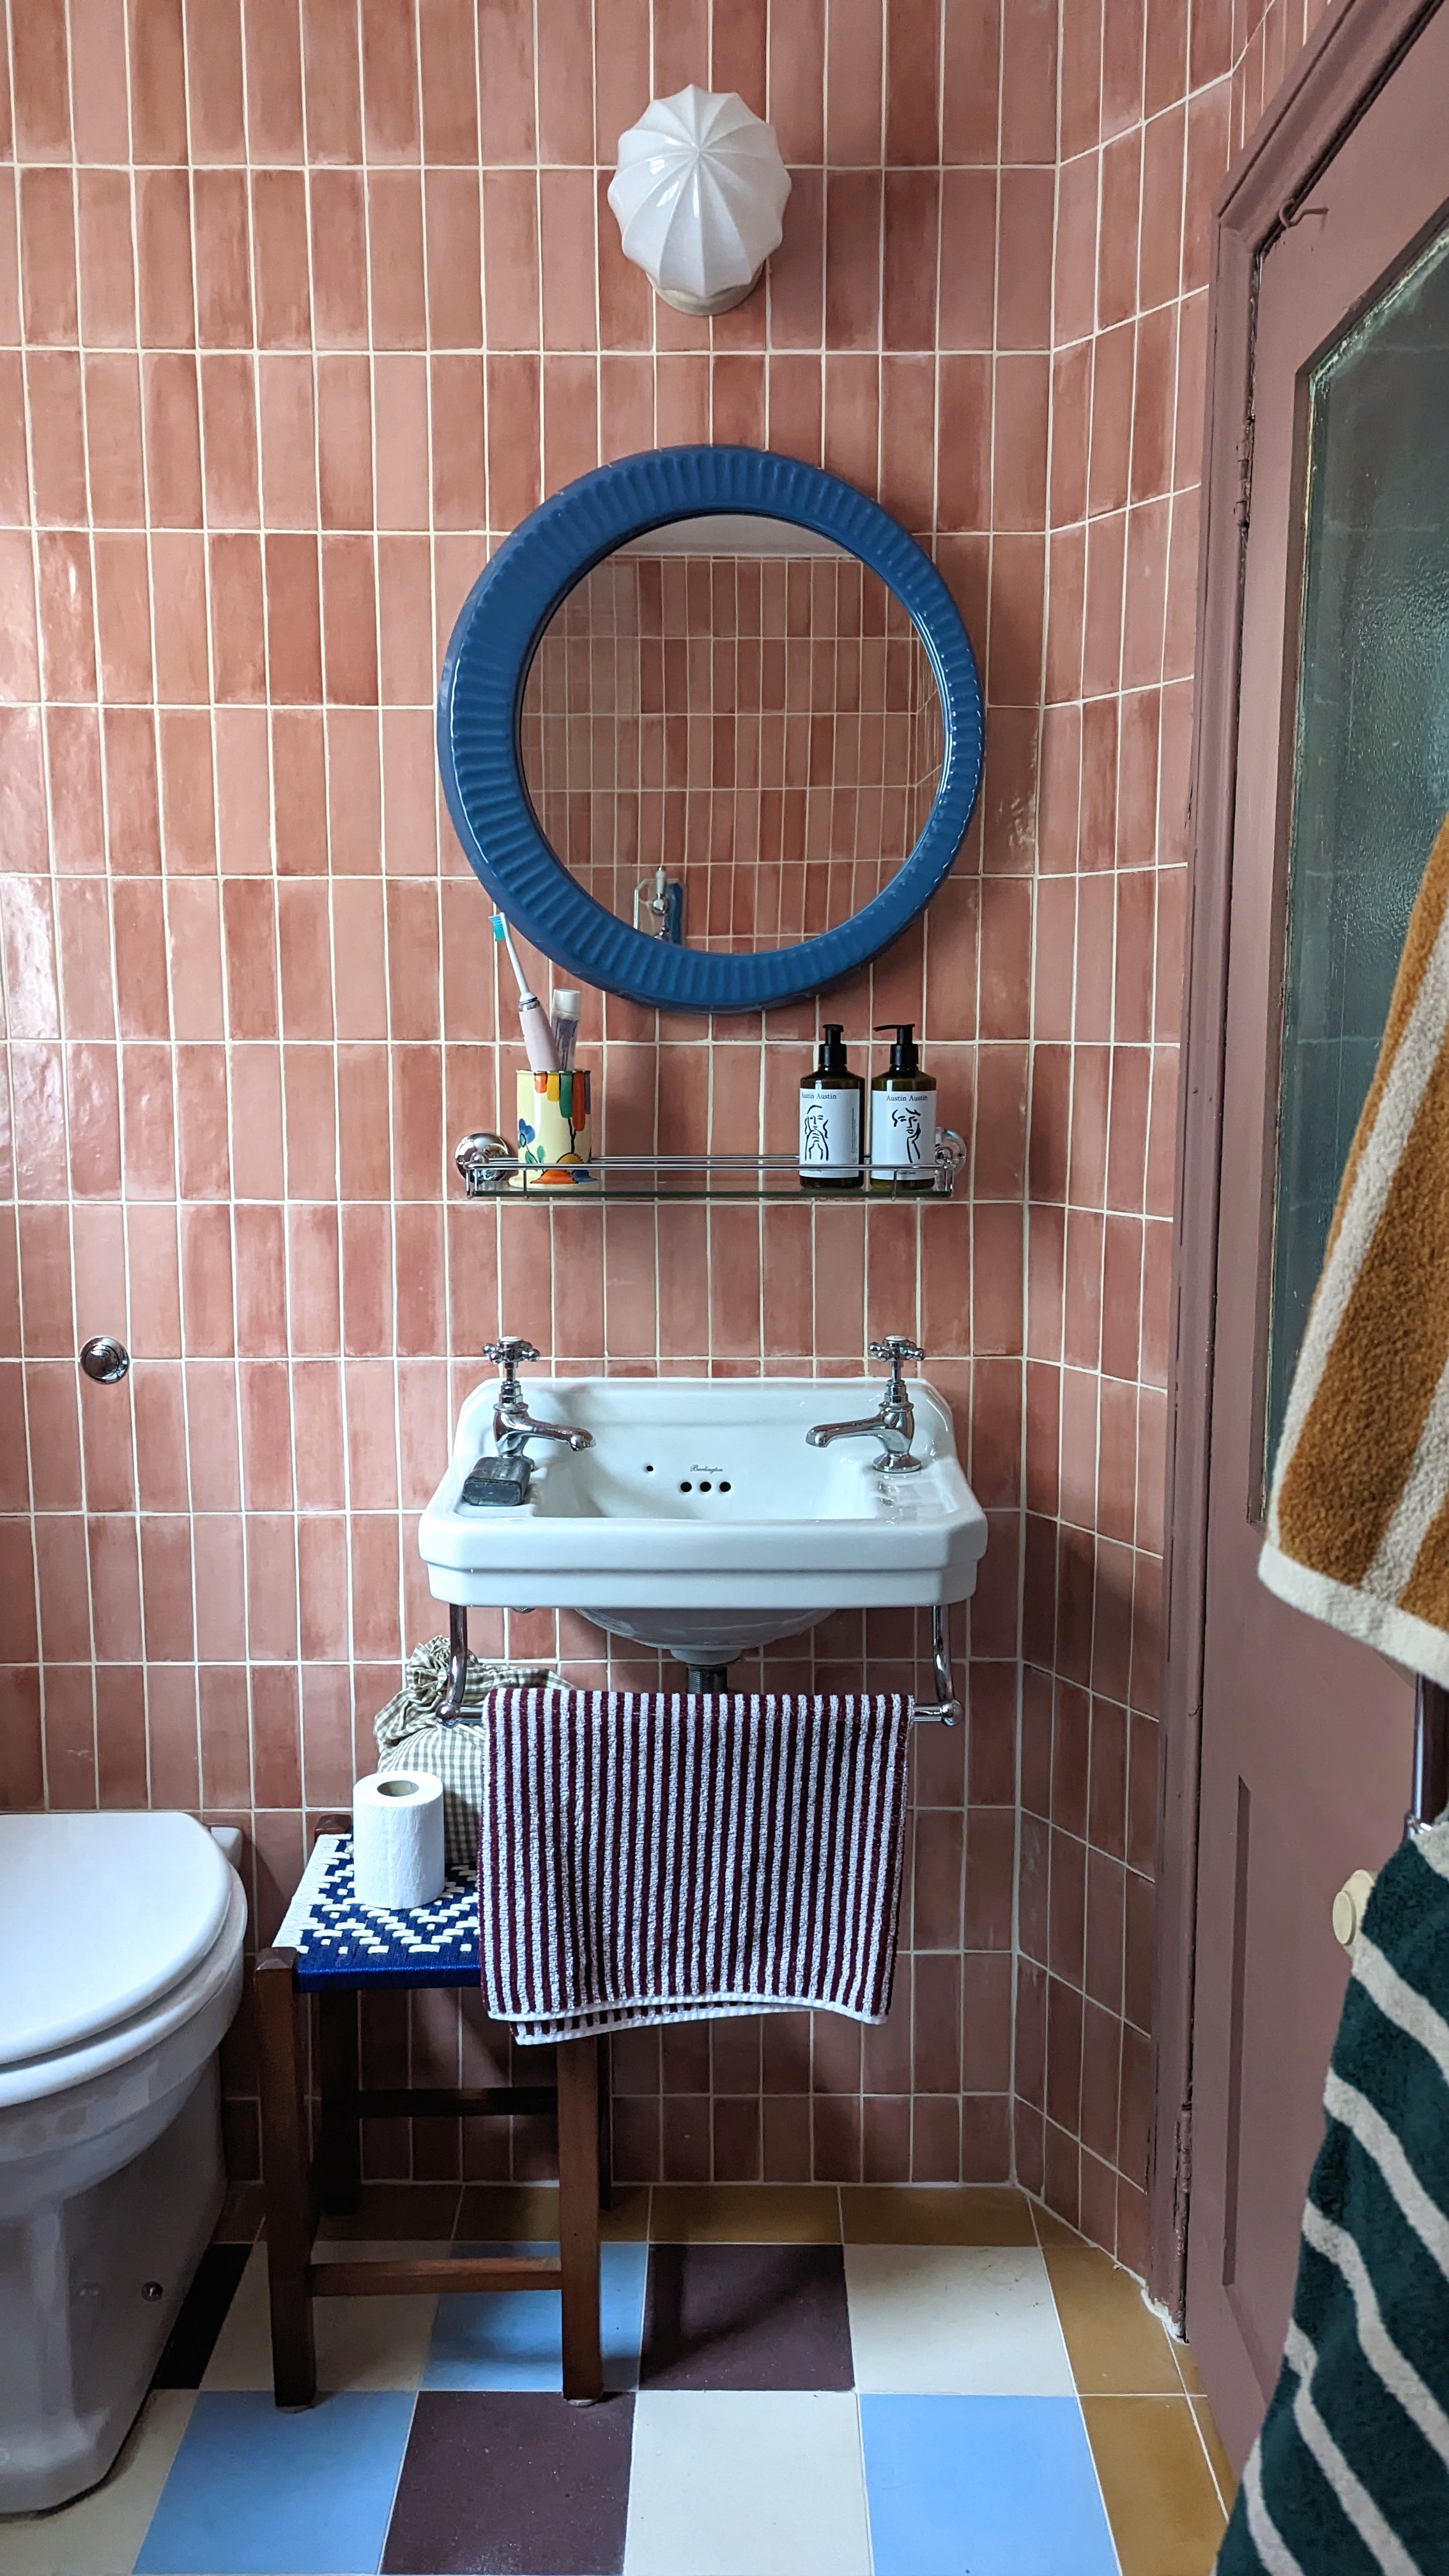 shower room: designer natasha lyon's remodel, margate, kent, england. 5